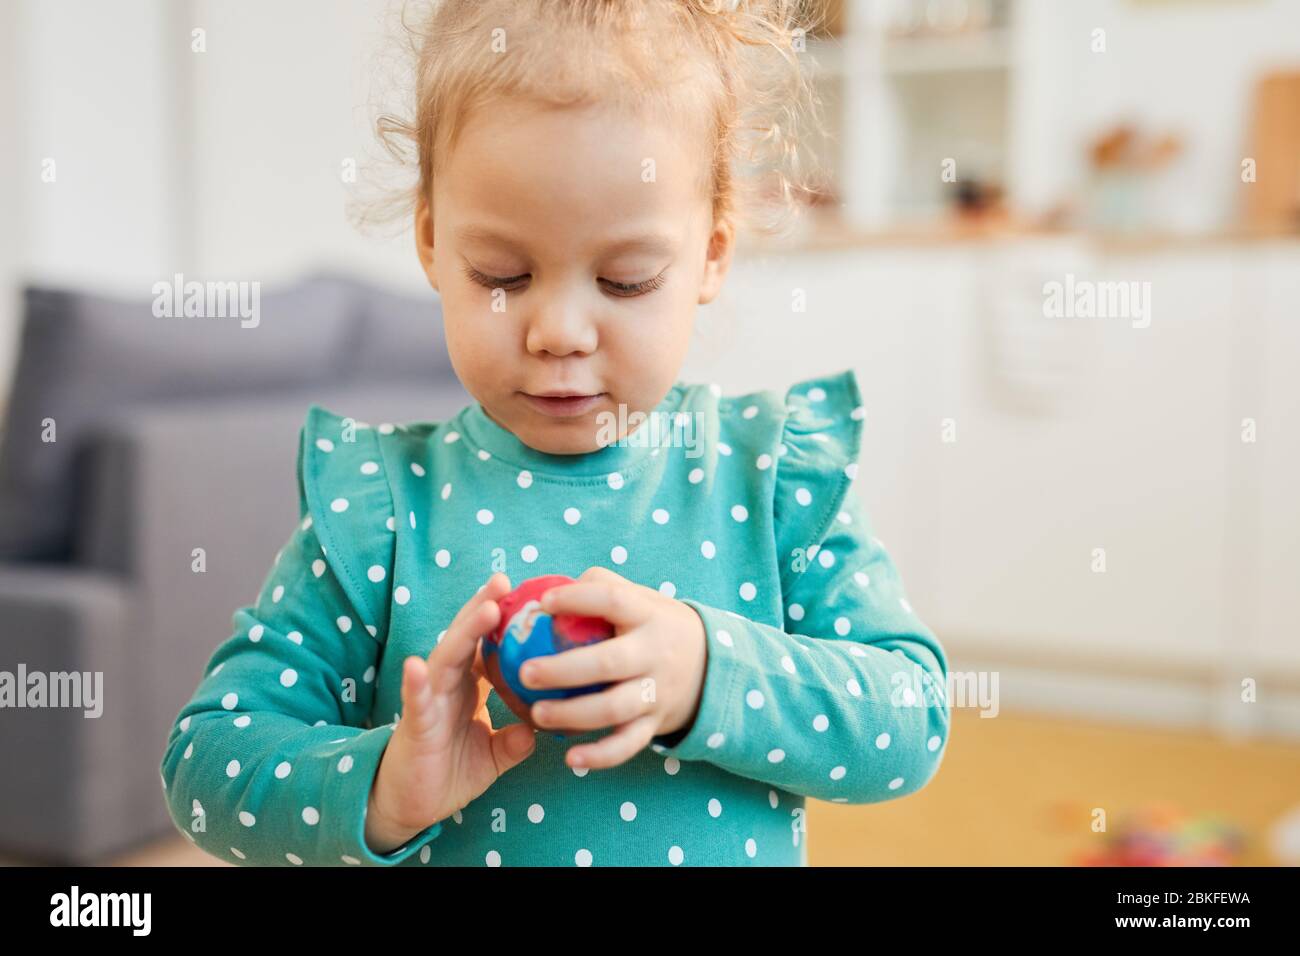 Petite fille caucasienne portant des vêtements à pois turquoise, faisant une boule d'argile à modeler colorée, portrait horizontal tourné Banque D'Images